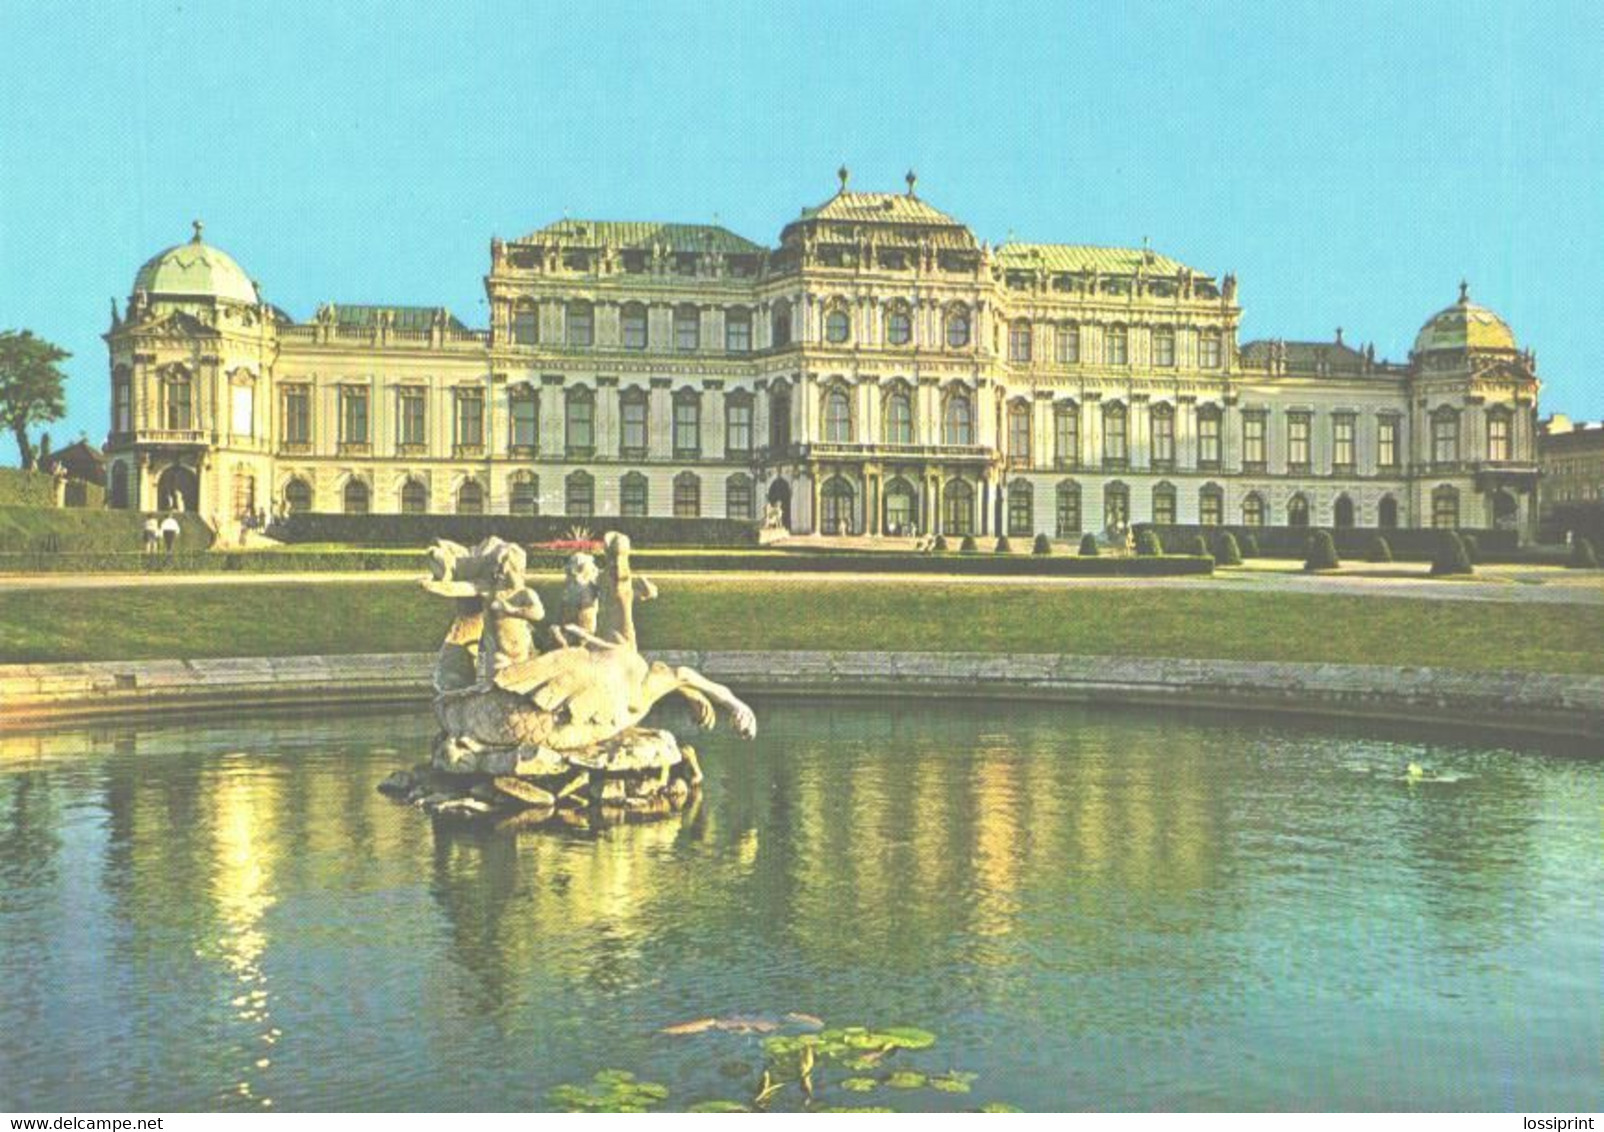 Austria:Vienna, Belvedere Palace Overview - Belvedere